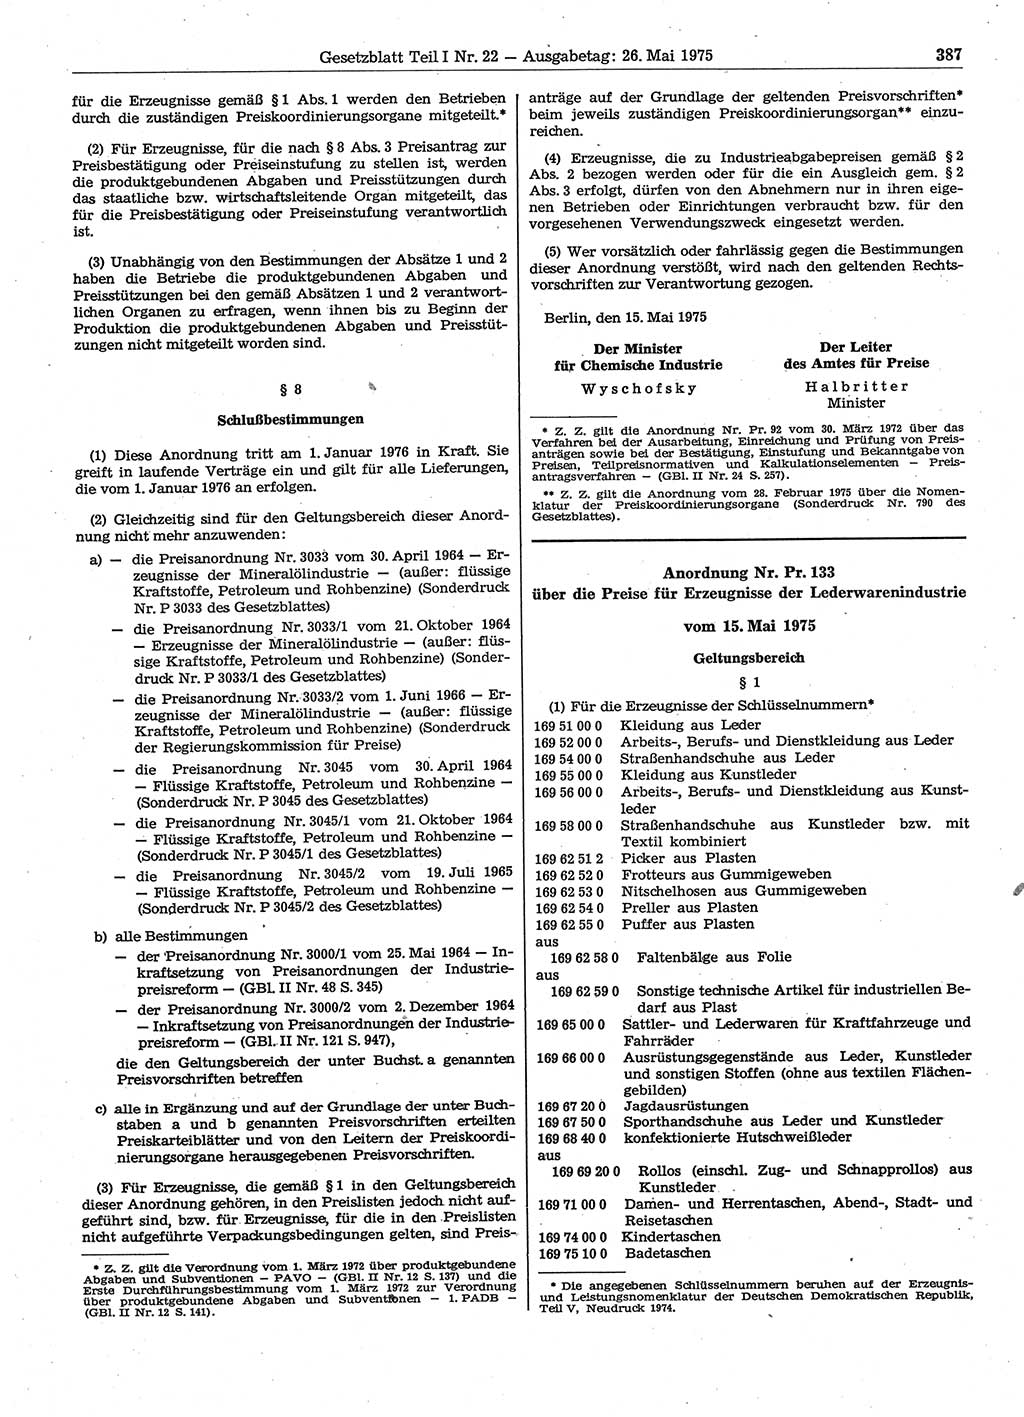 Gesetzblatt (GBl.) der Deutschen Demokratischen Republik (DDR) Teil Ⅰ 1975, Seite 387 (GBl. DDR Ⅰ 1975, S. 387)